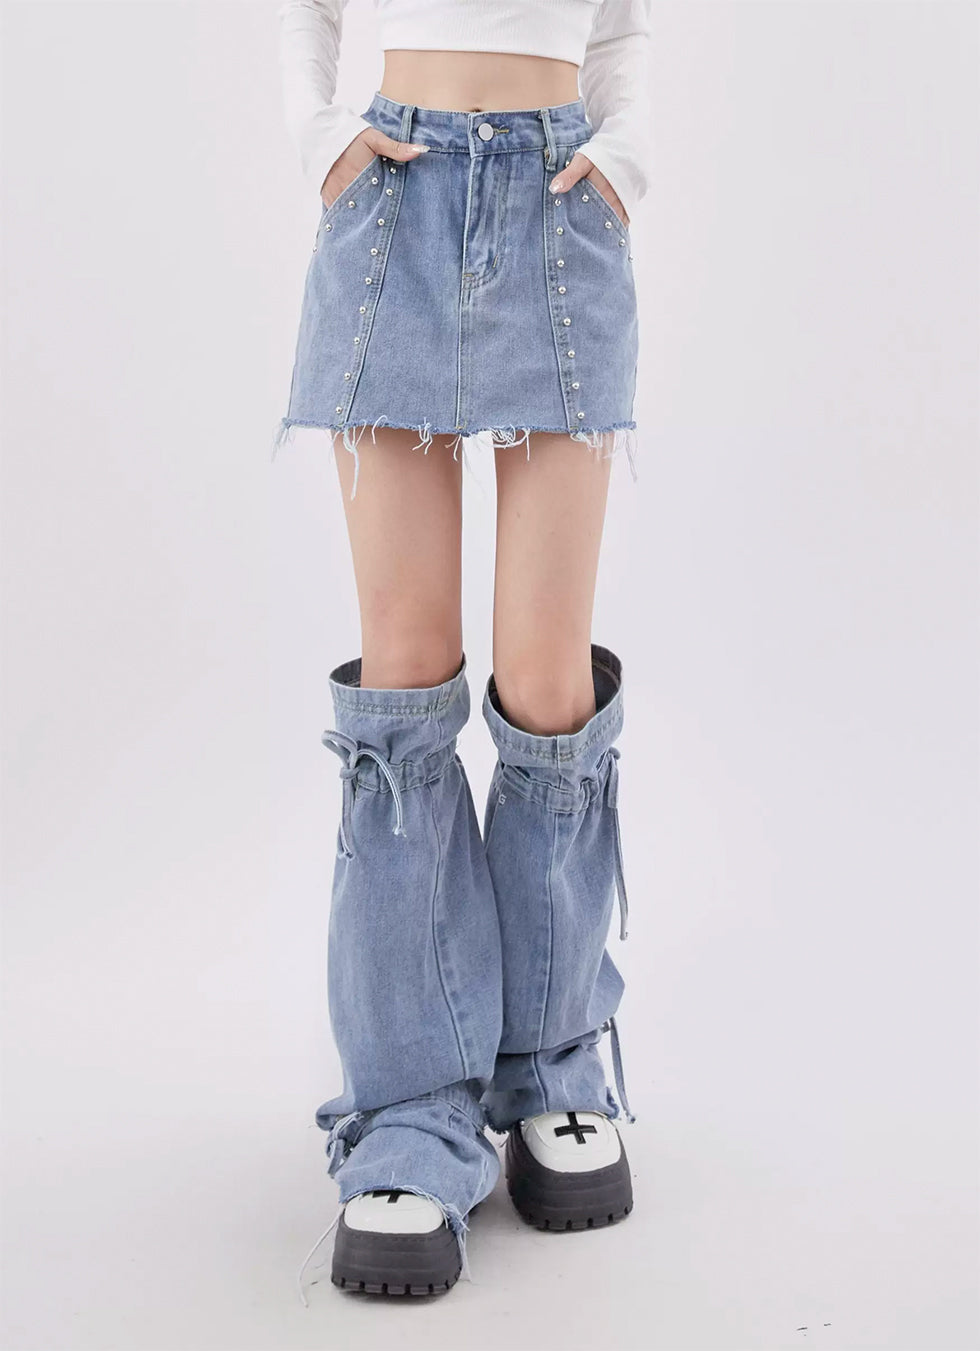 Leg Cover Denim Short Skirt - chiclara